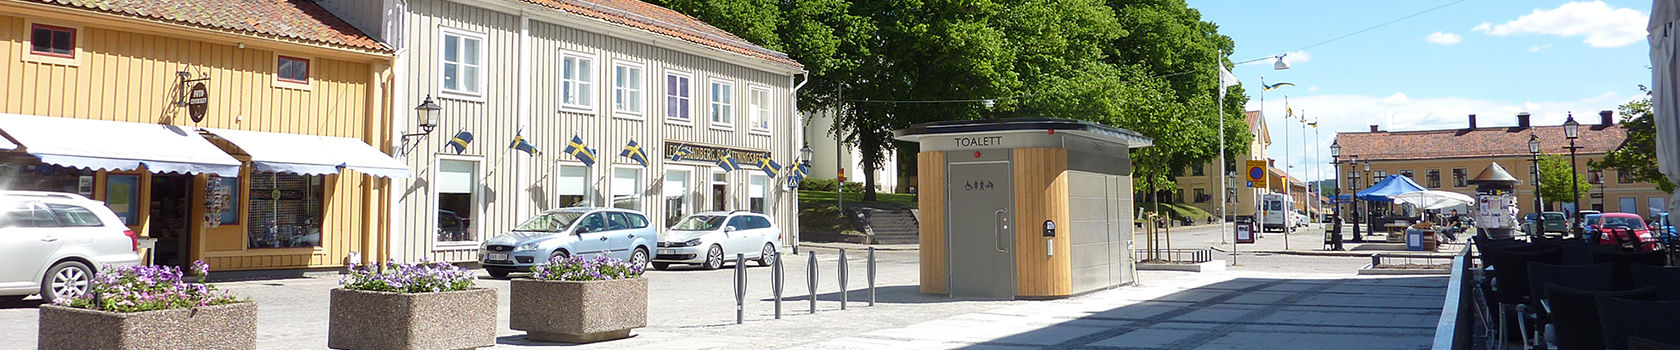 Hyrtoaletten förvärvar Nordic Toilet